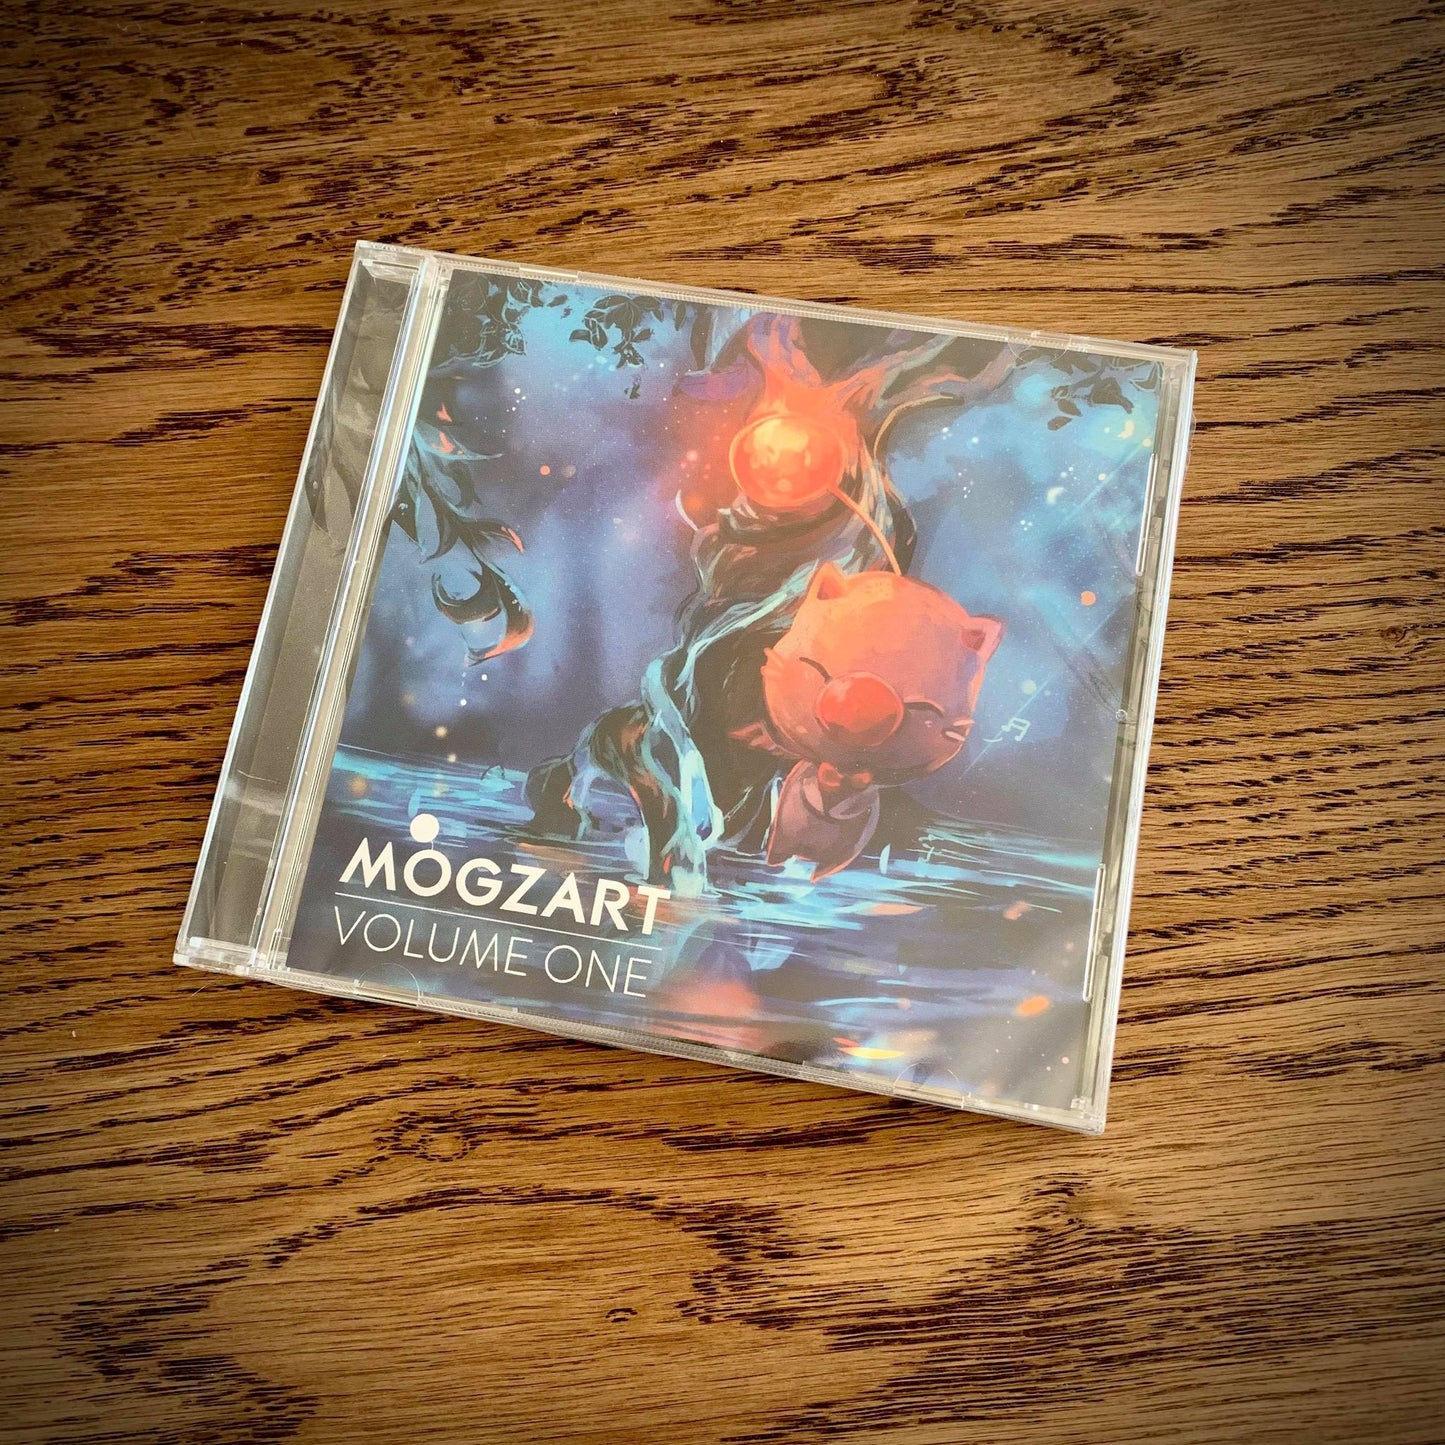 Mogzart Vol. 1 CD